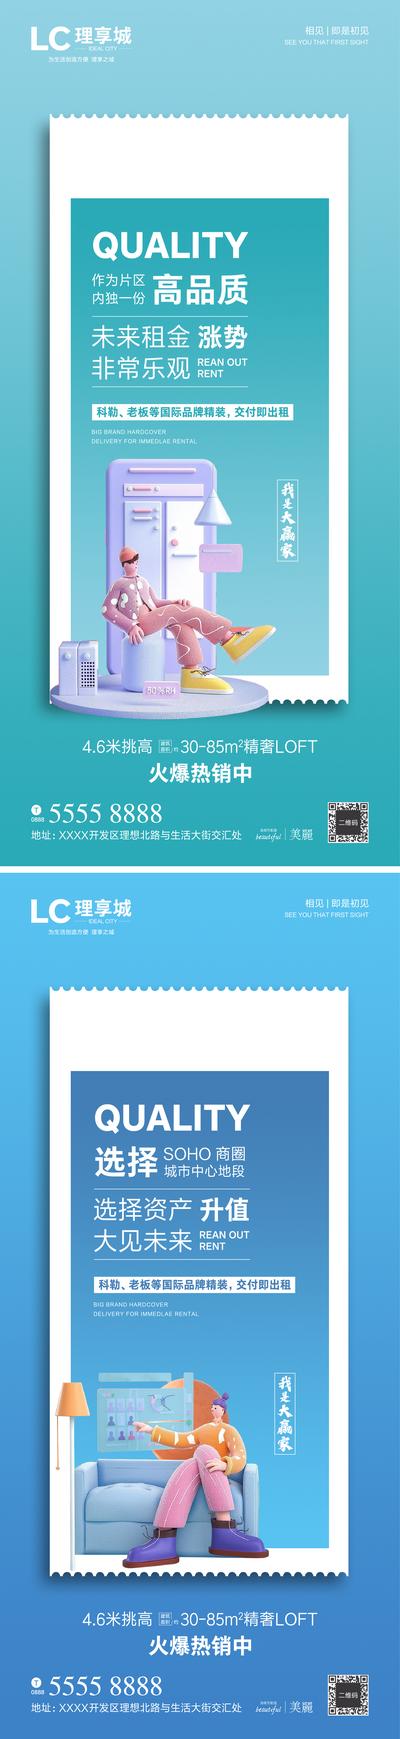 南门网 海报 房地产 LOFT 公寓 价值点 卖点 资产 加推 品质 租金 商圈 SOHO 升值 年轻 时尚 